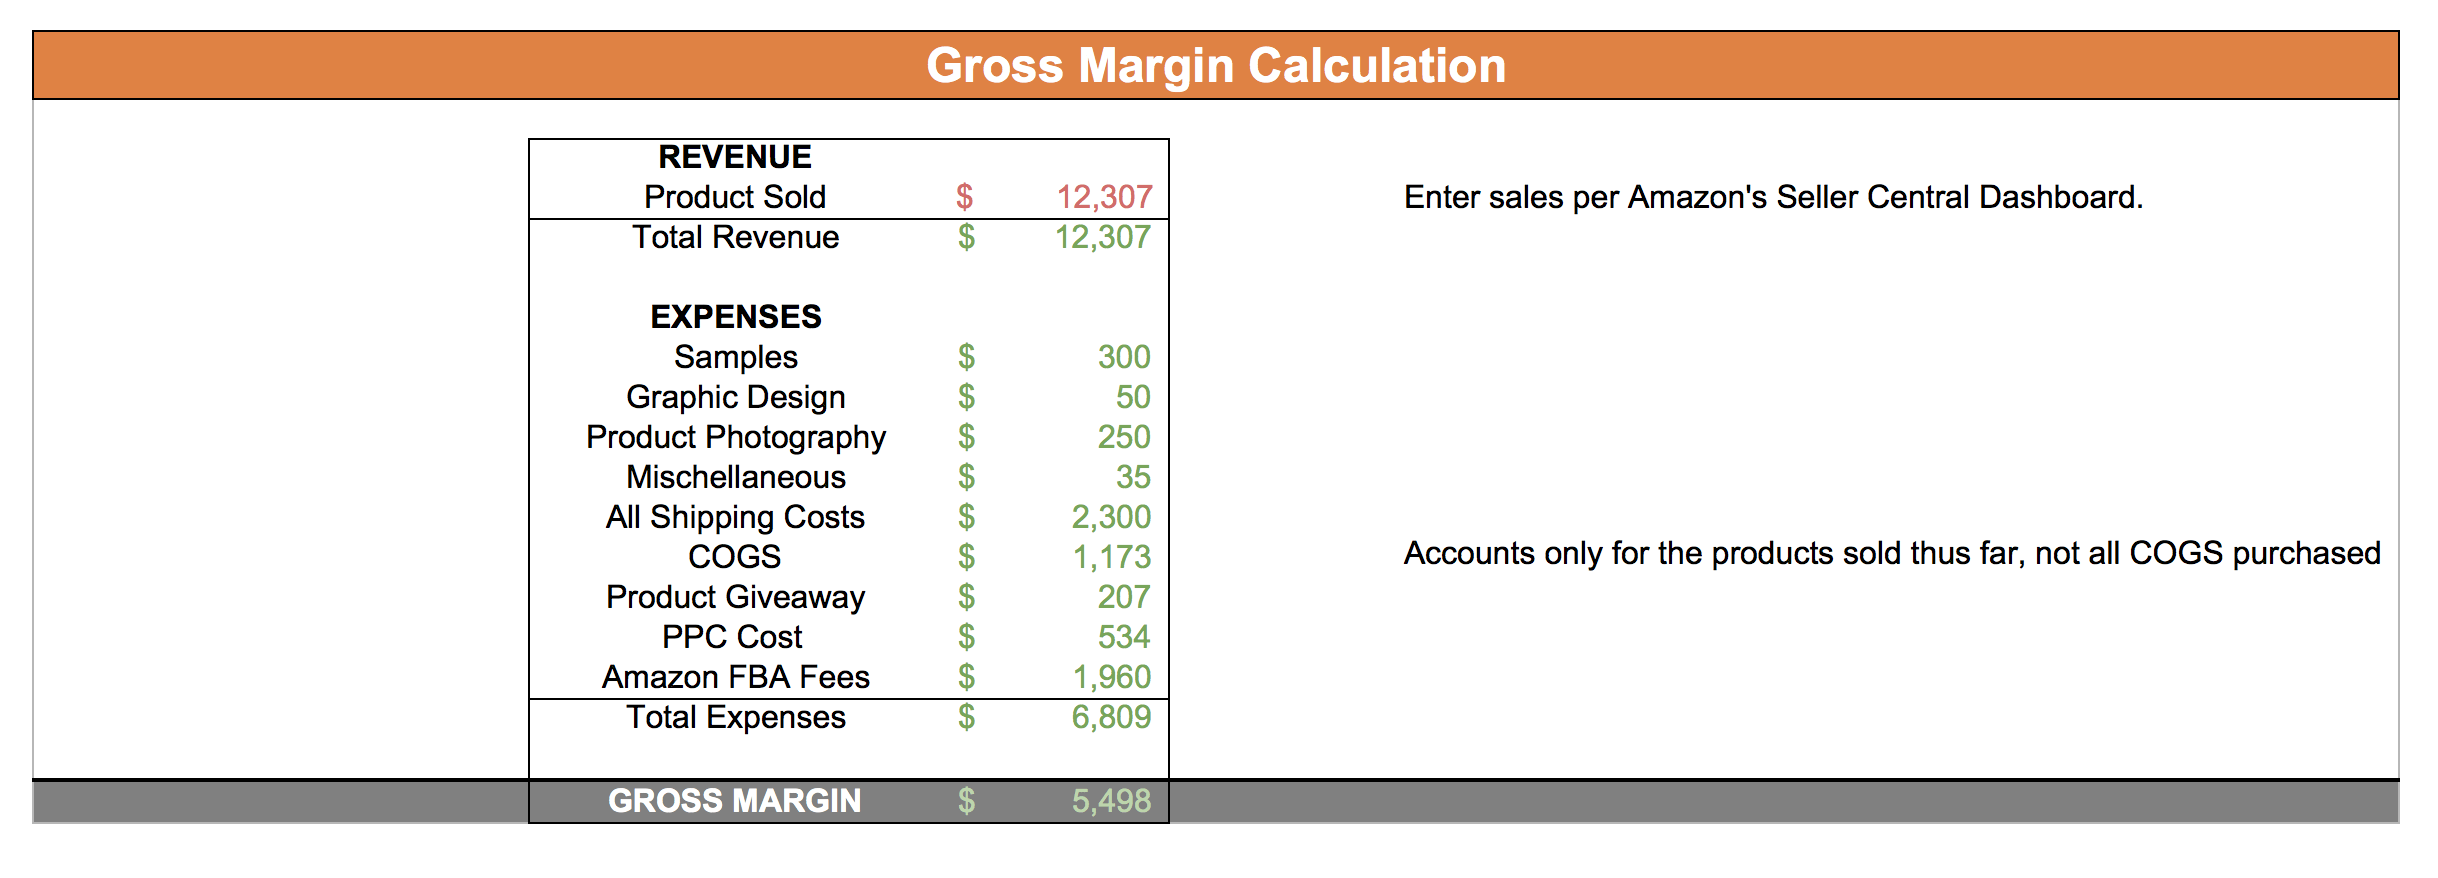 Free Amazon FBA Calculator - Calculate Revenue, Profit & Fees